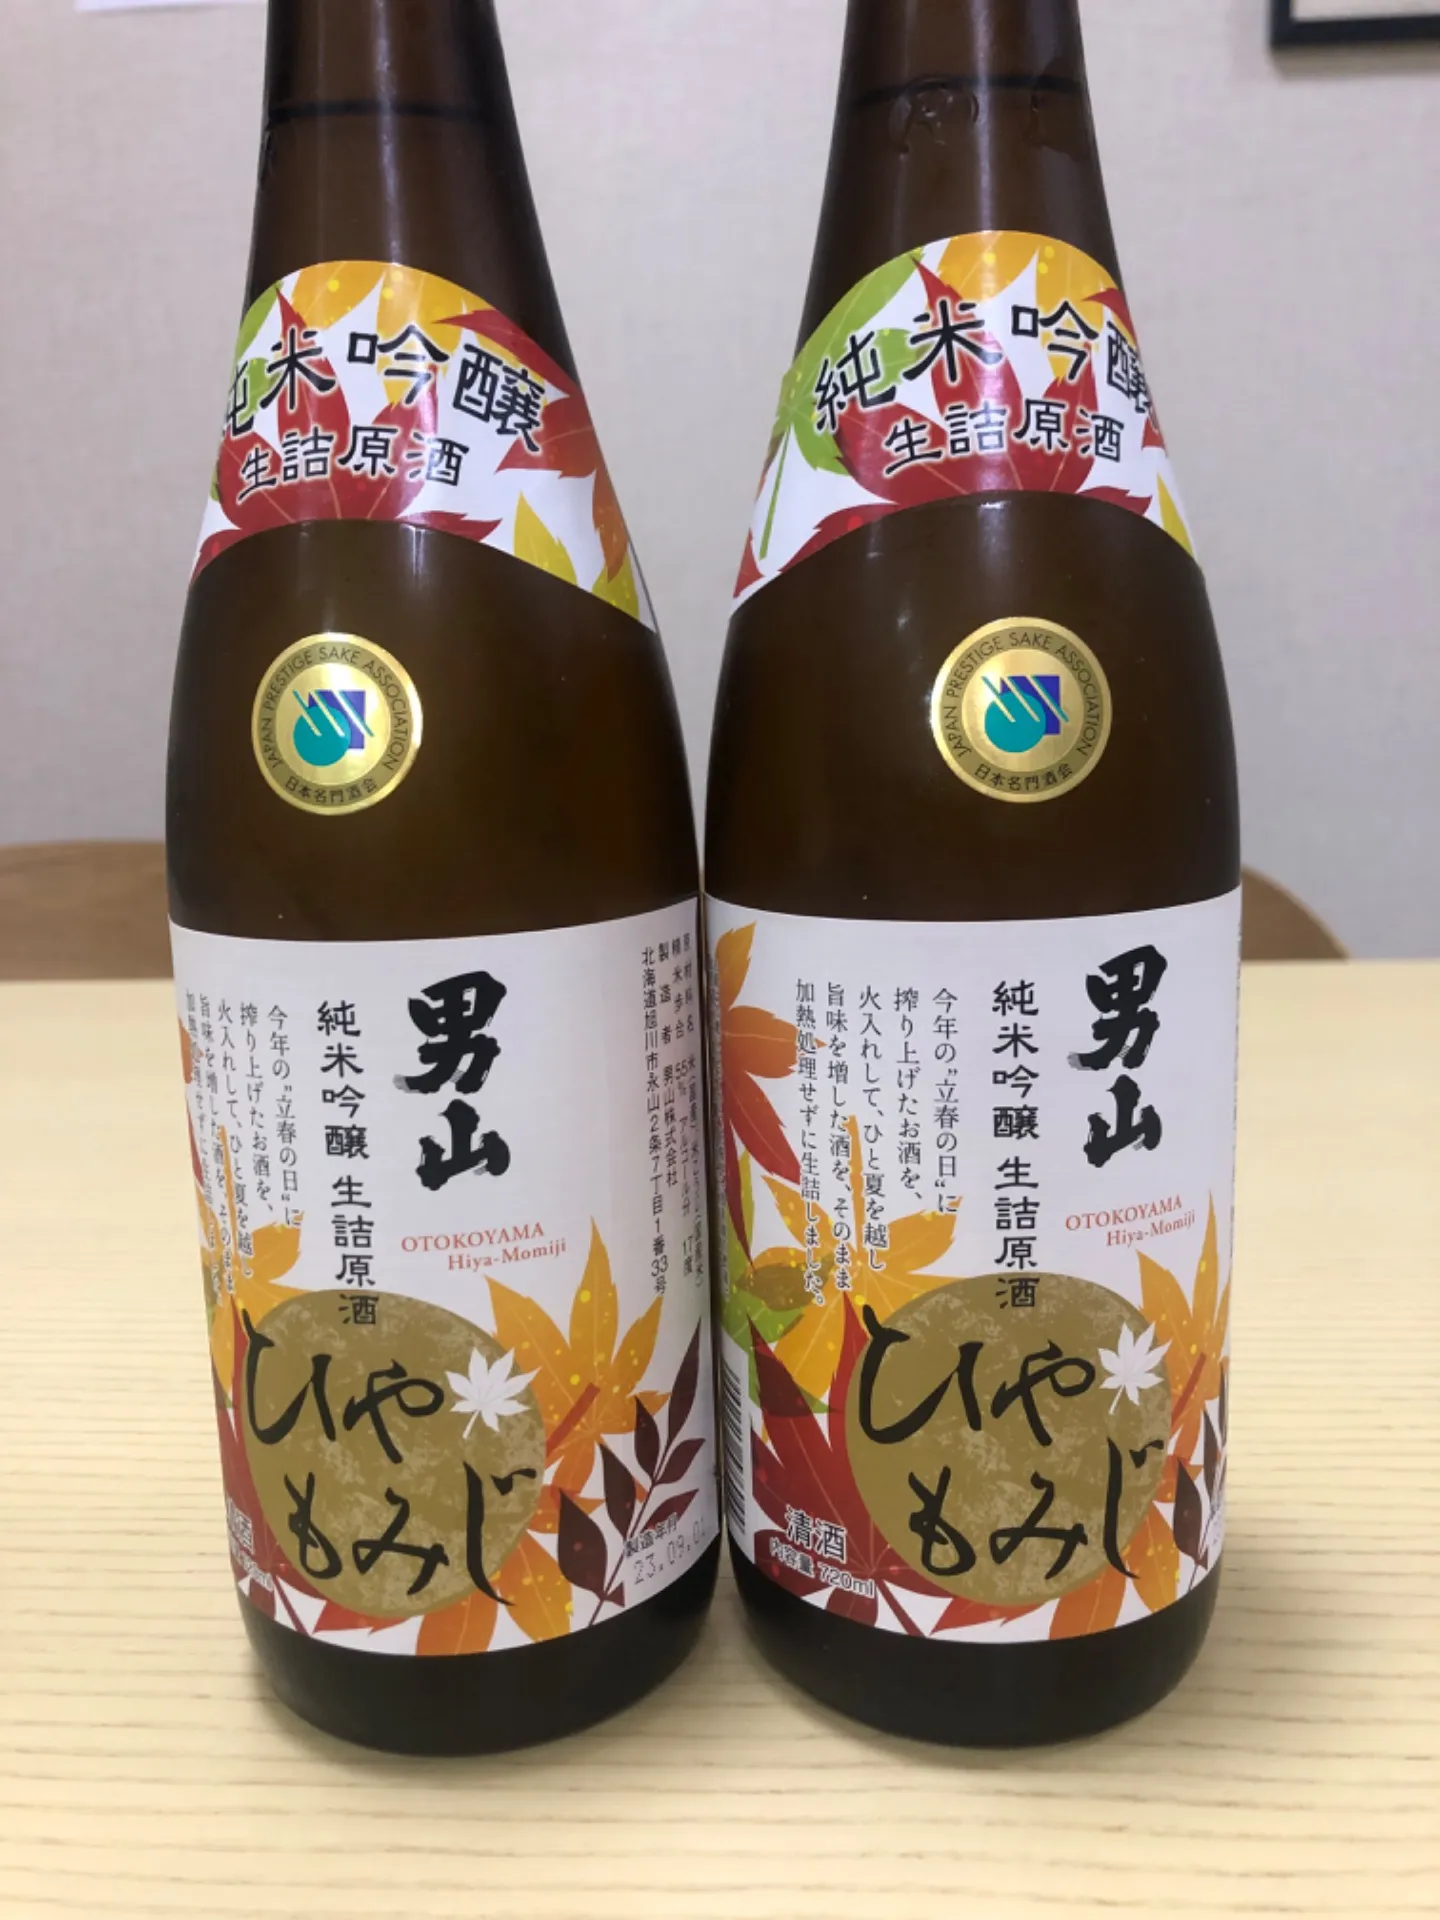 旭川市春光の海鮮料理のお店・立花の秋のおすすめ日本酒です。